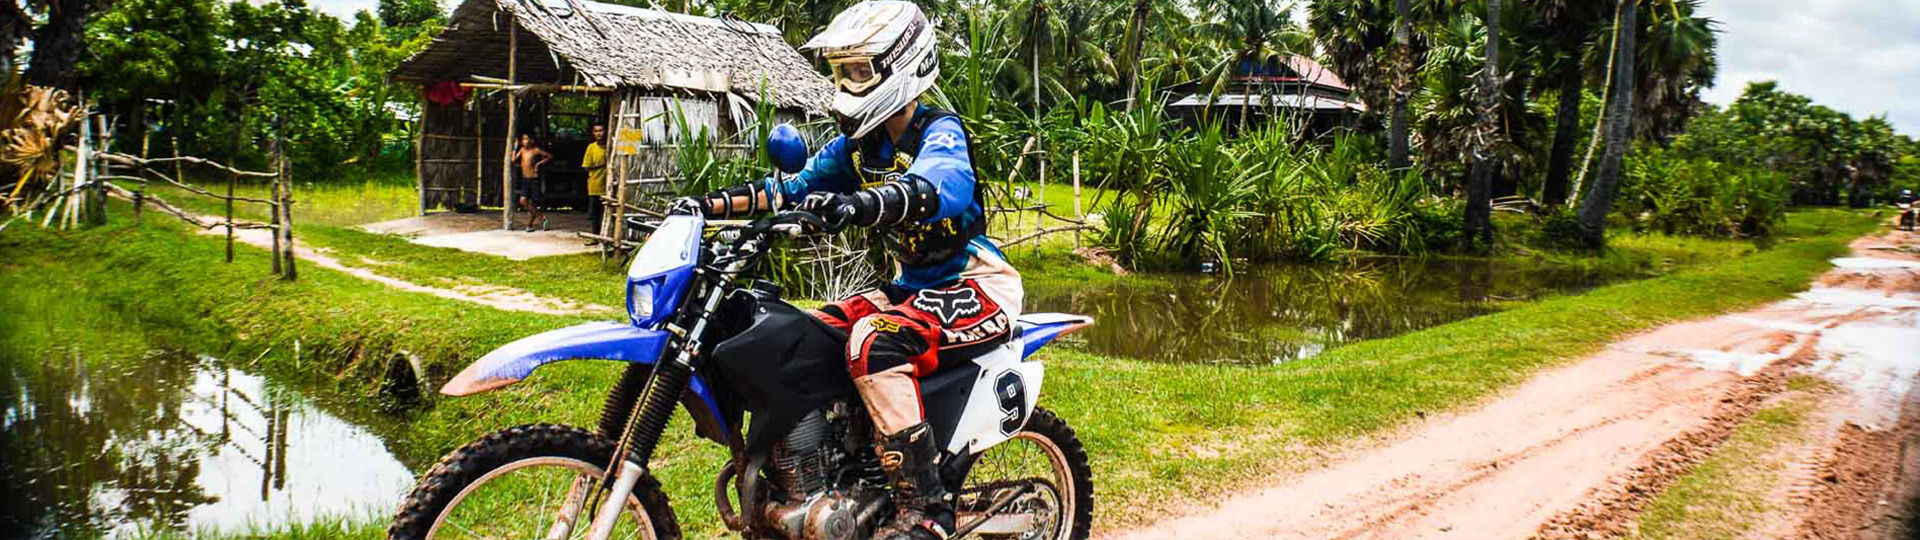 Northern Vietnam Motorbike Tour – 4 Days